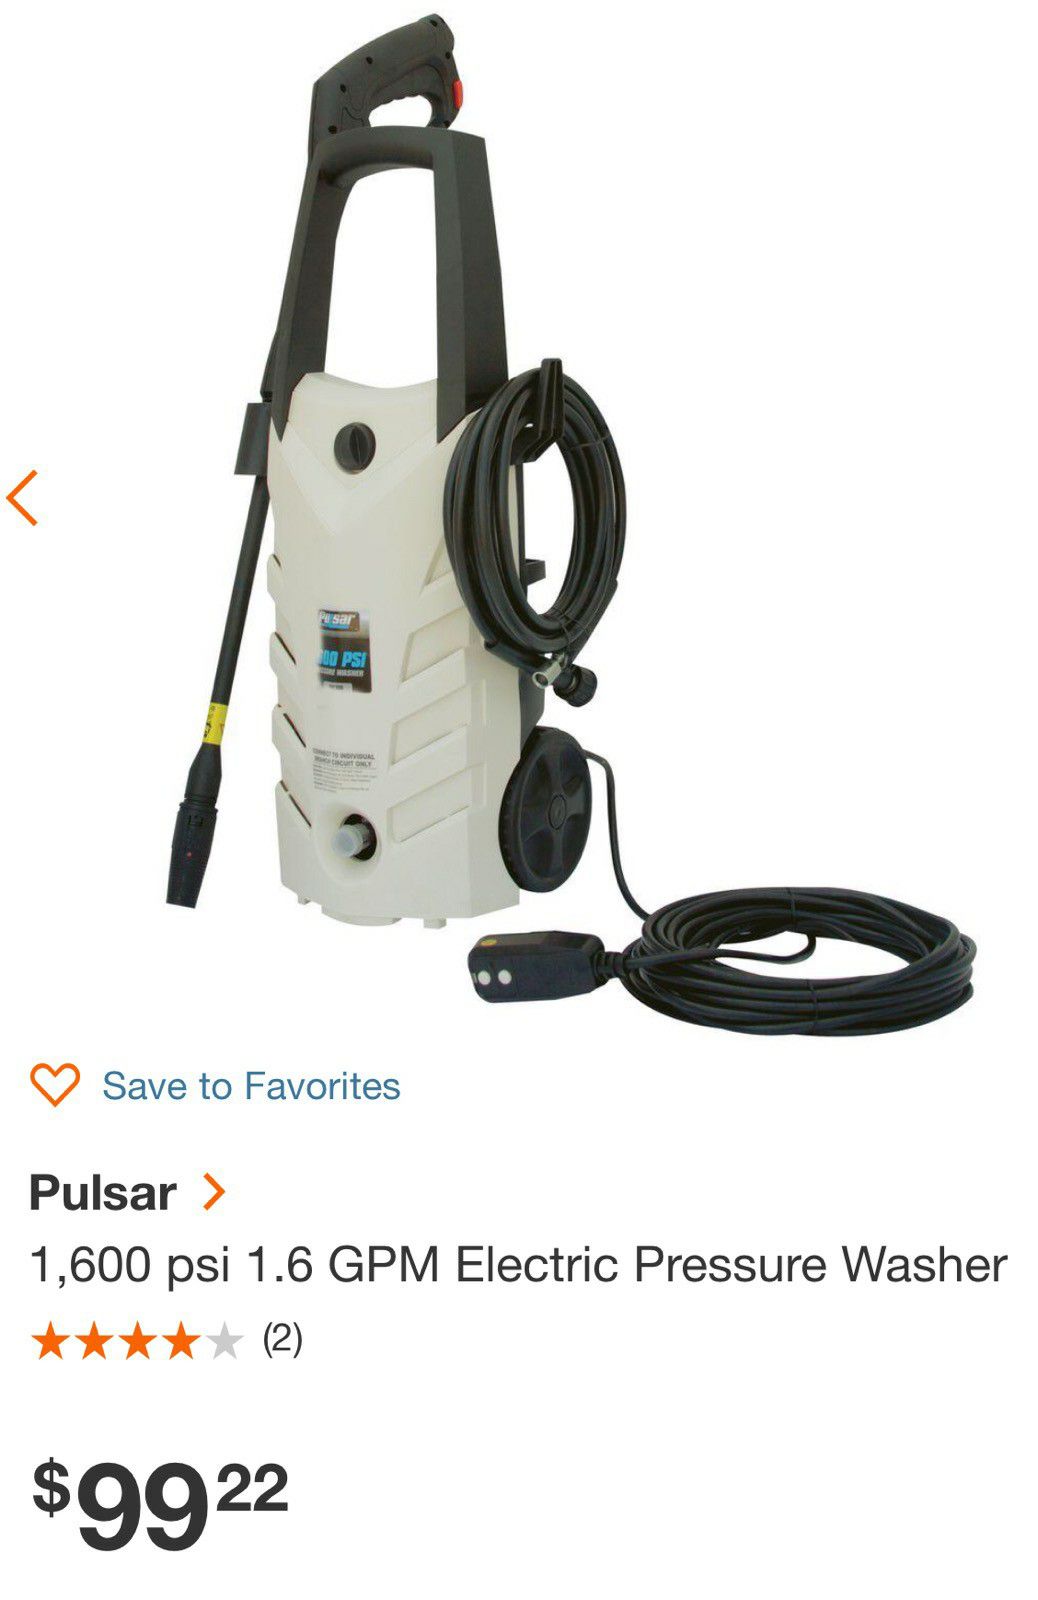 Pulsar 1600 psi powerwasher